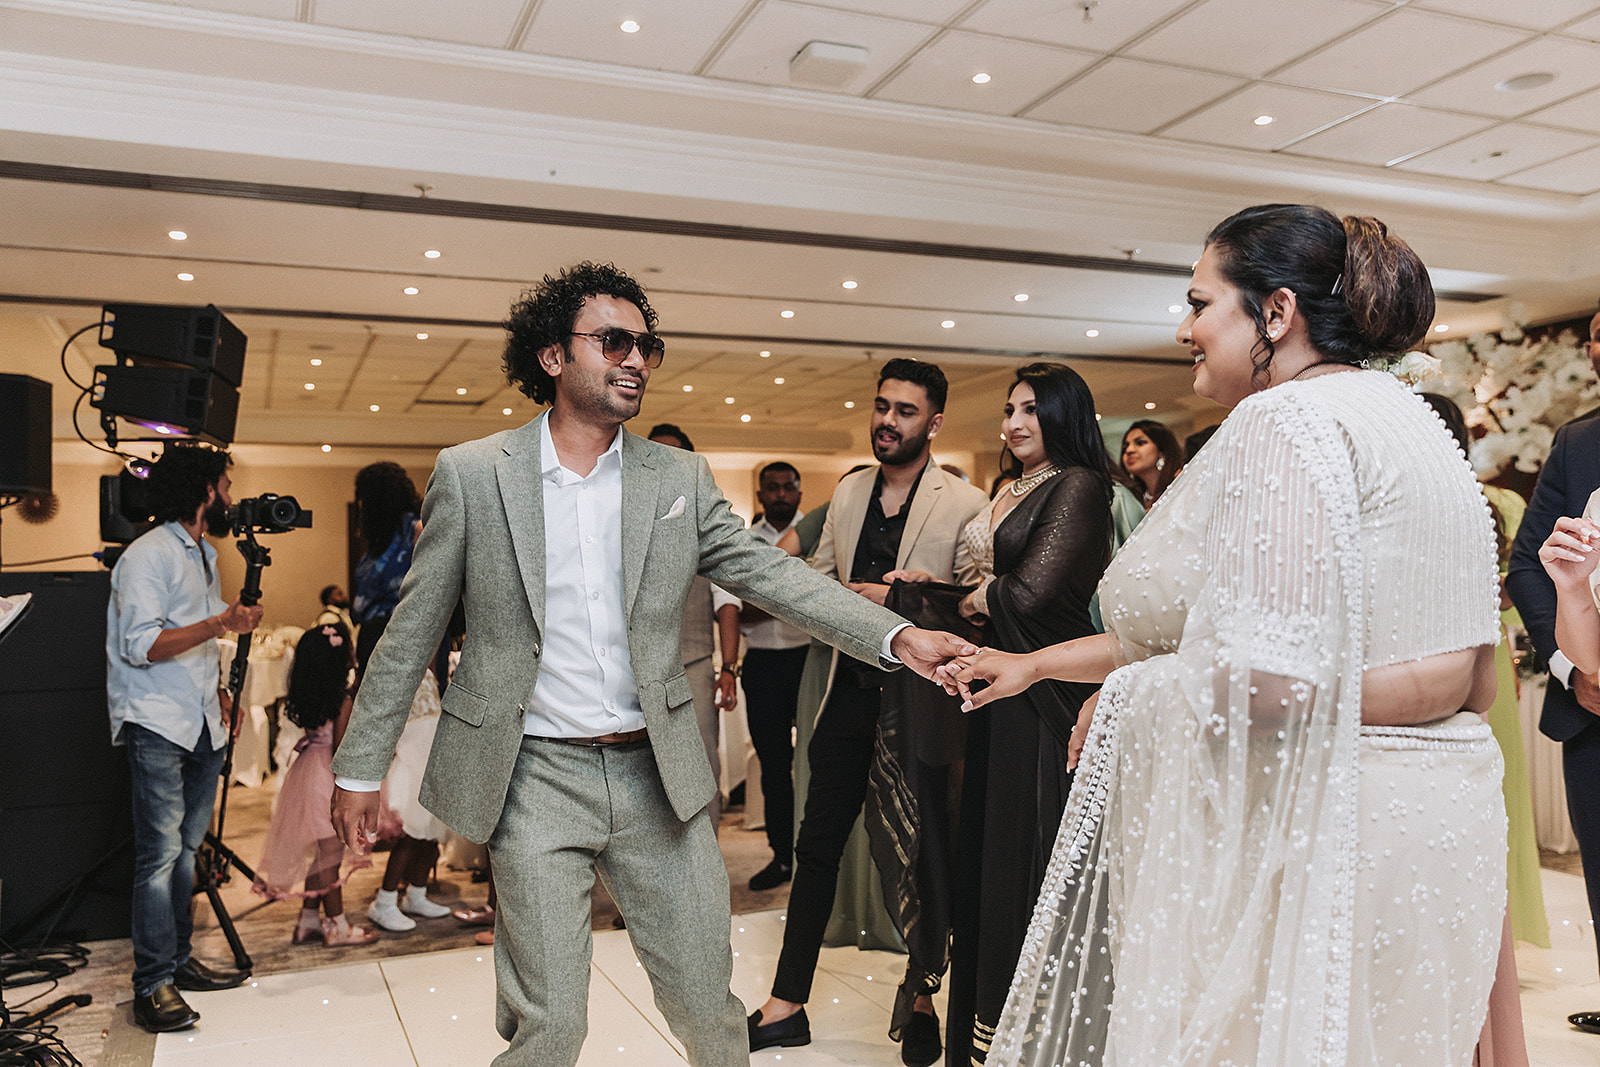 bride and groom dancing at Sri Lankan wedding